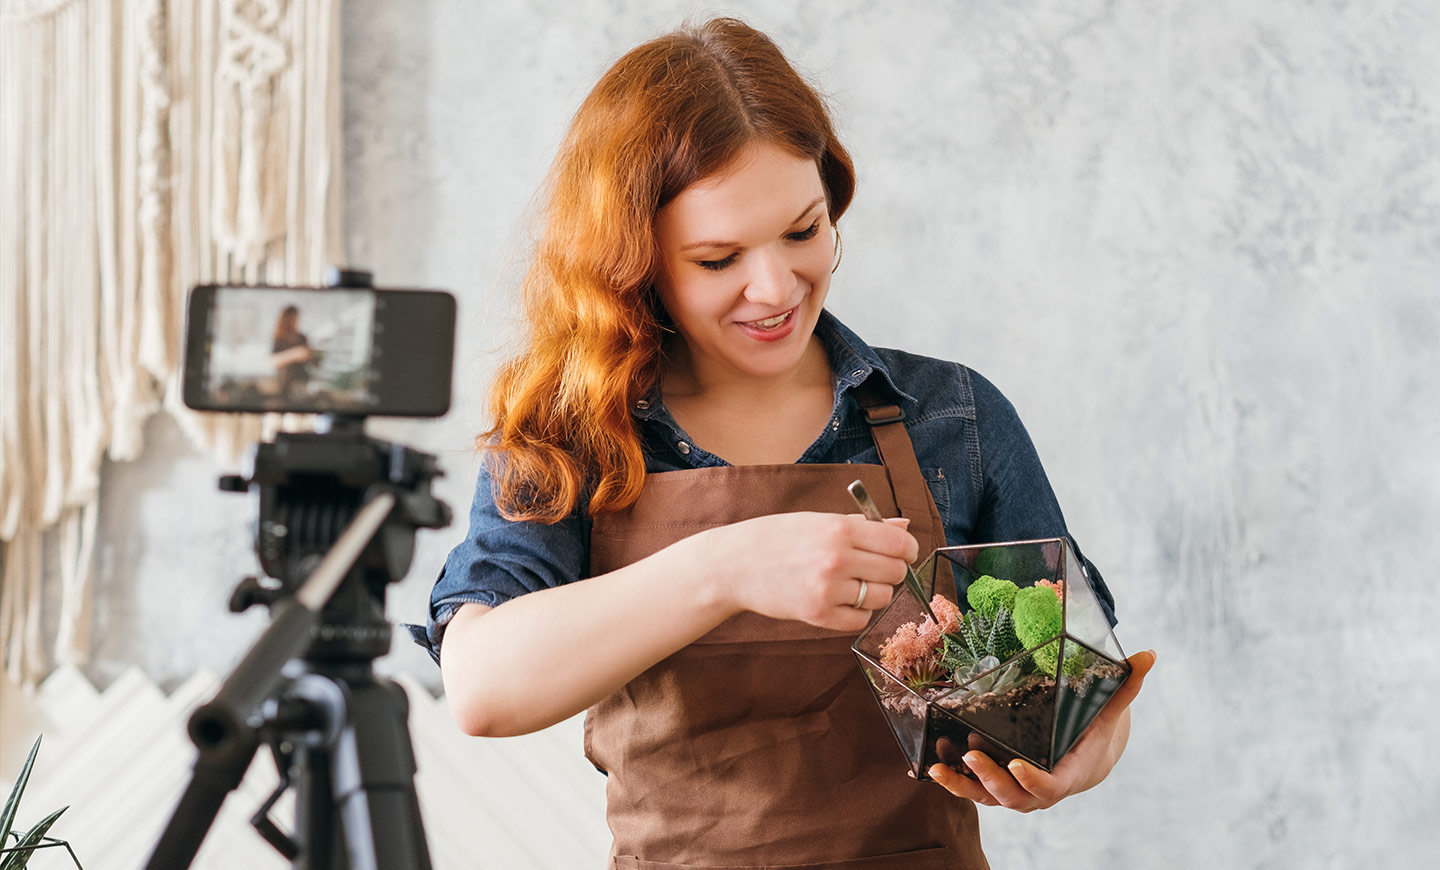 En florist som använder en smarttelefon för att strömma en instruktionsvideo om trädgårdsarbete och planterar suckulenter